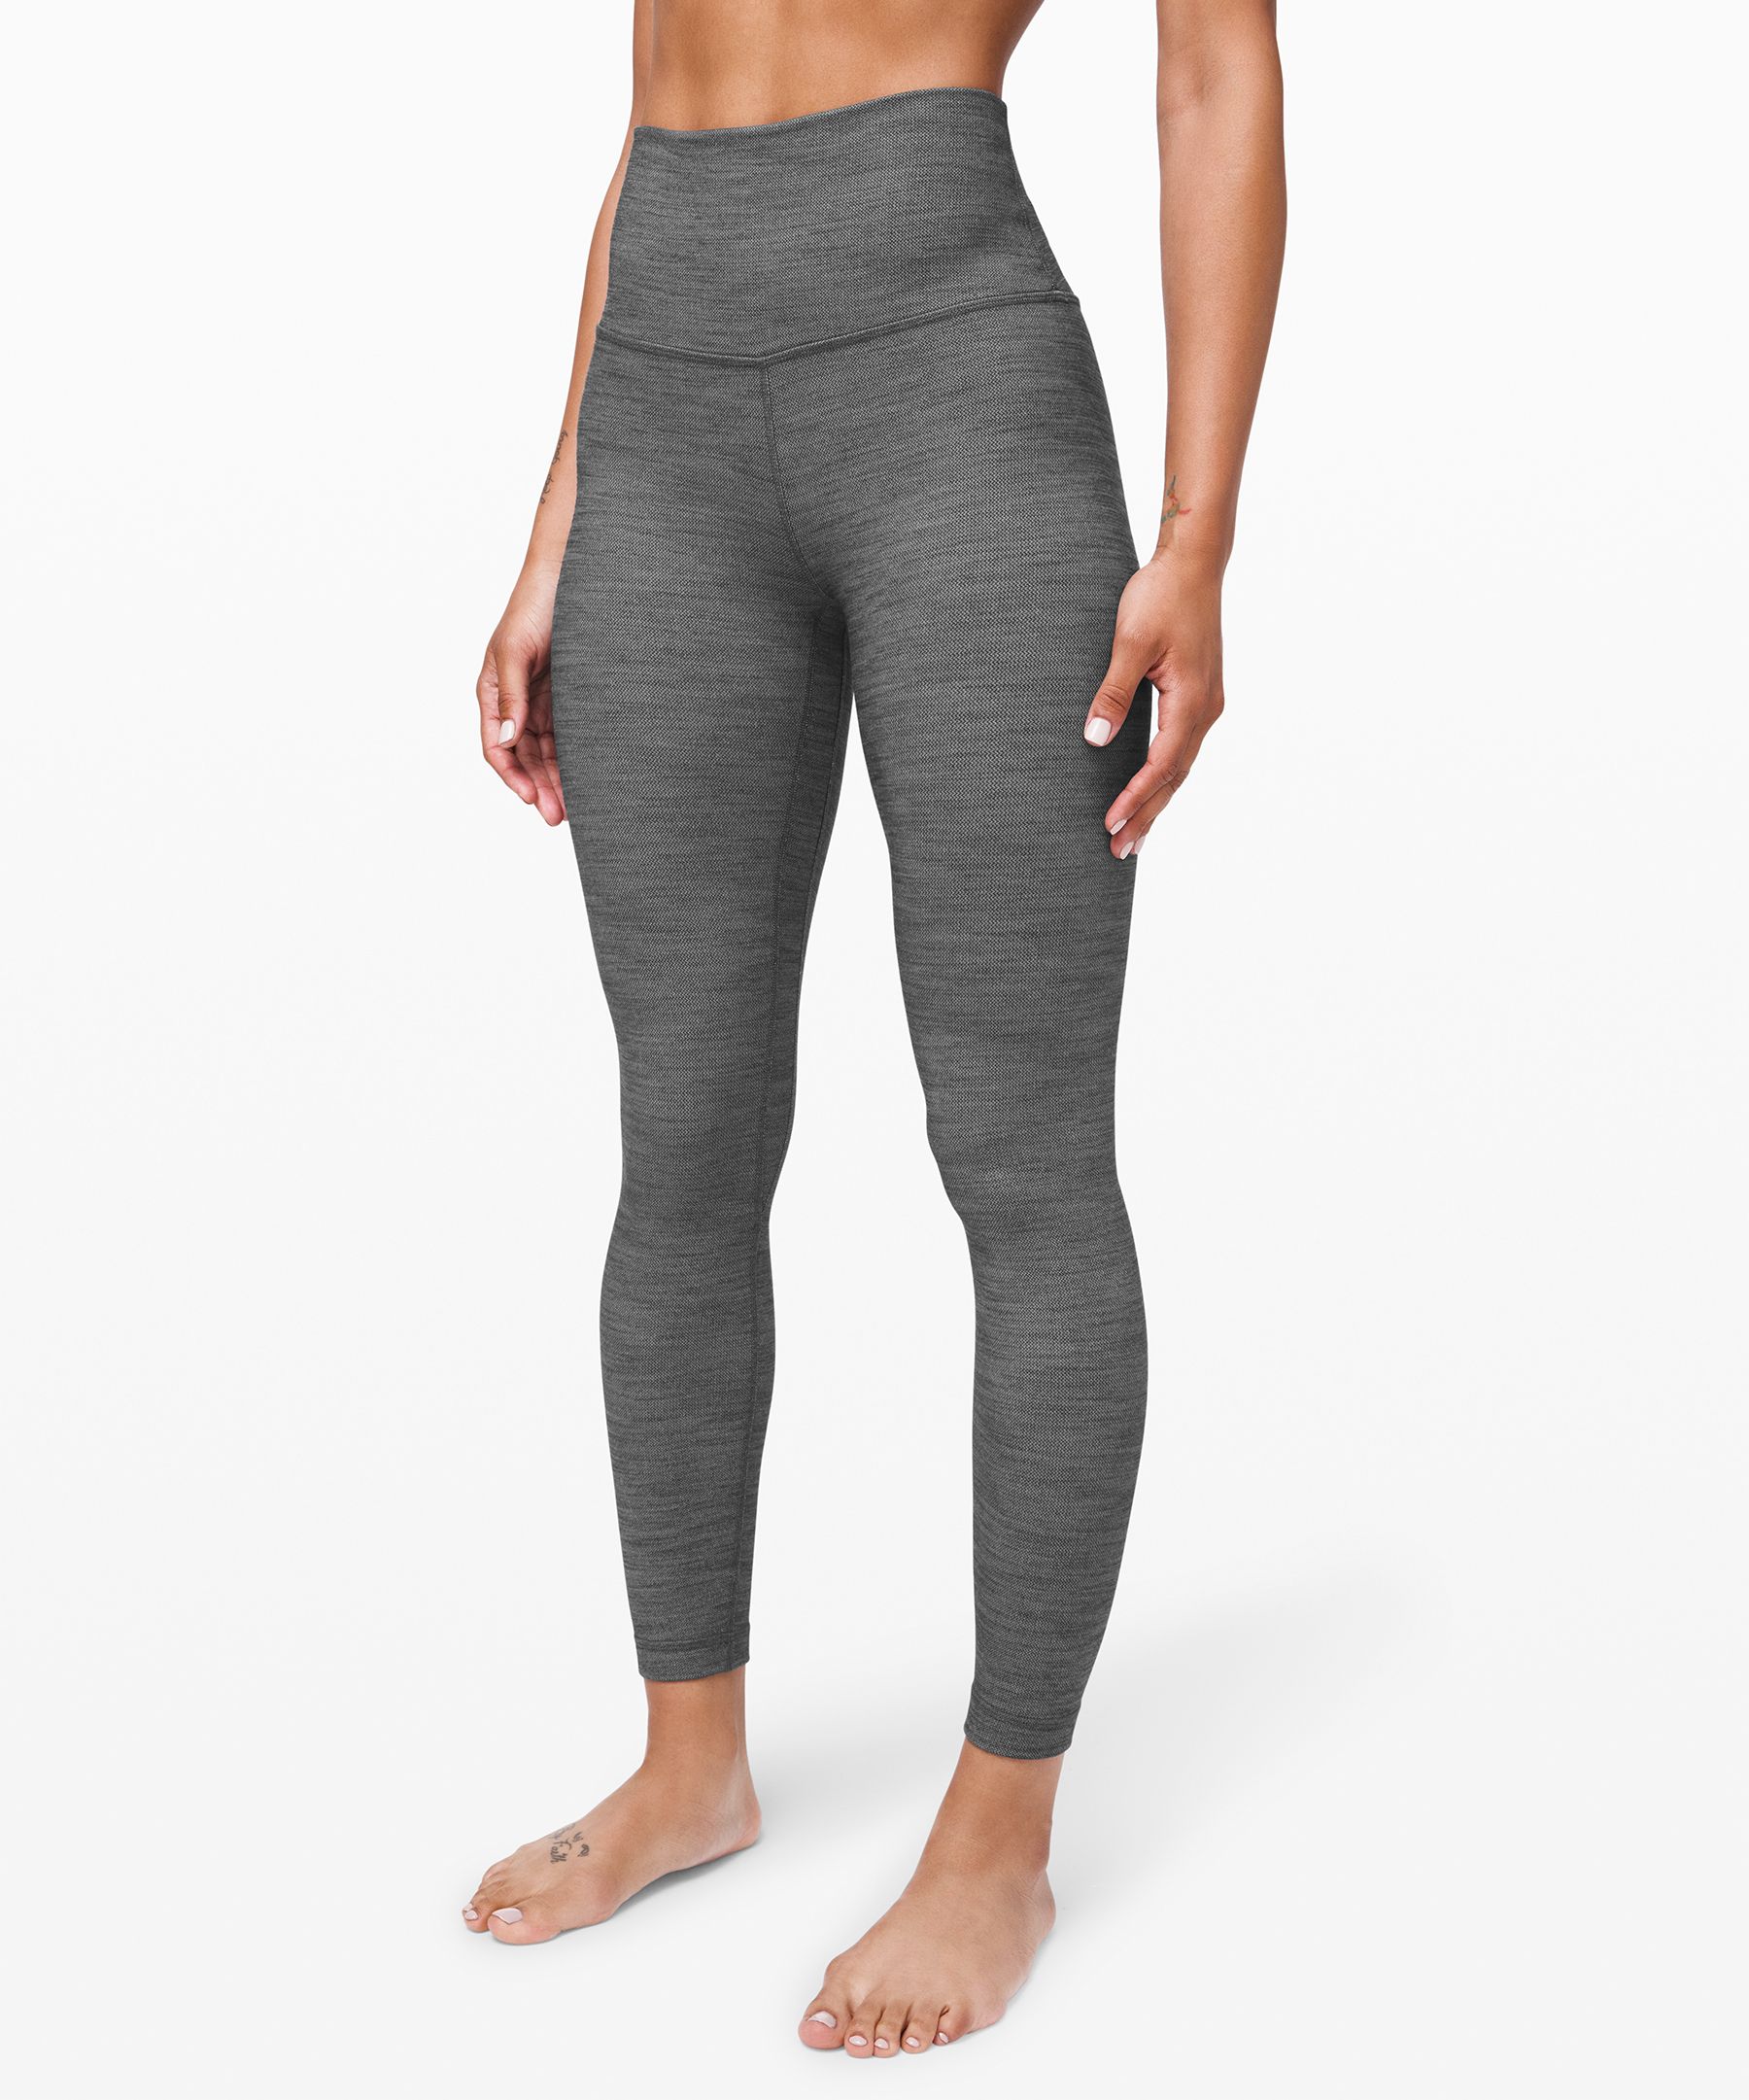 gray lululemon leggings